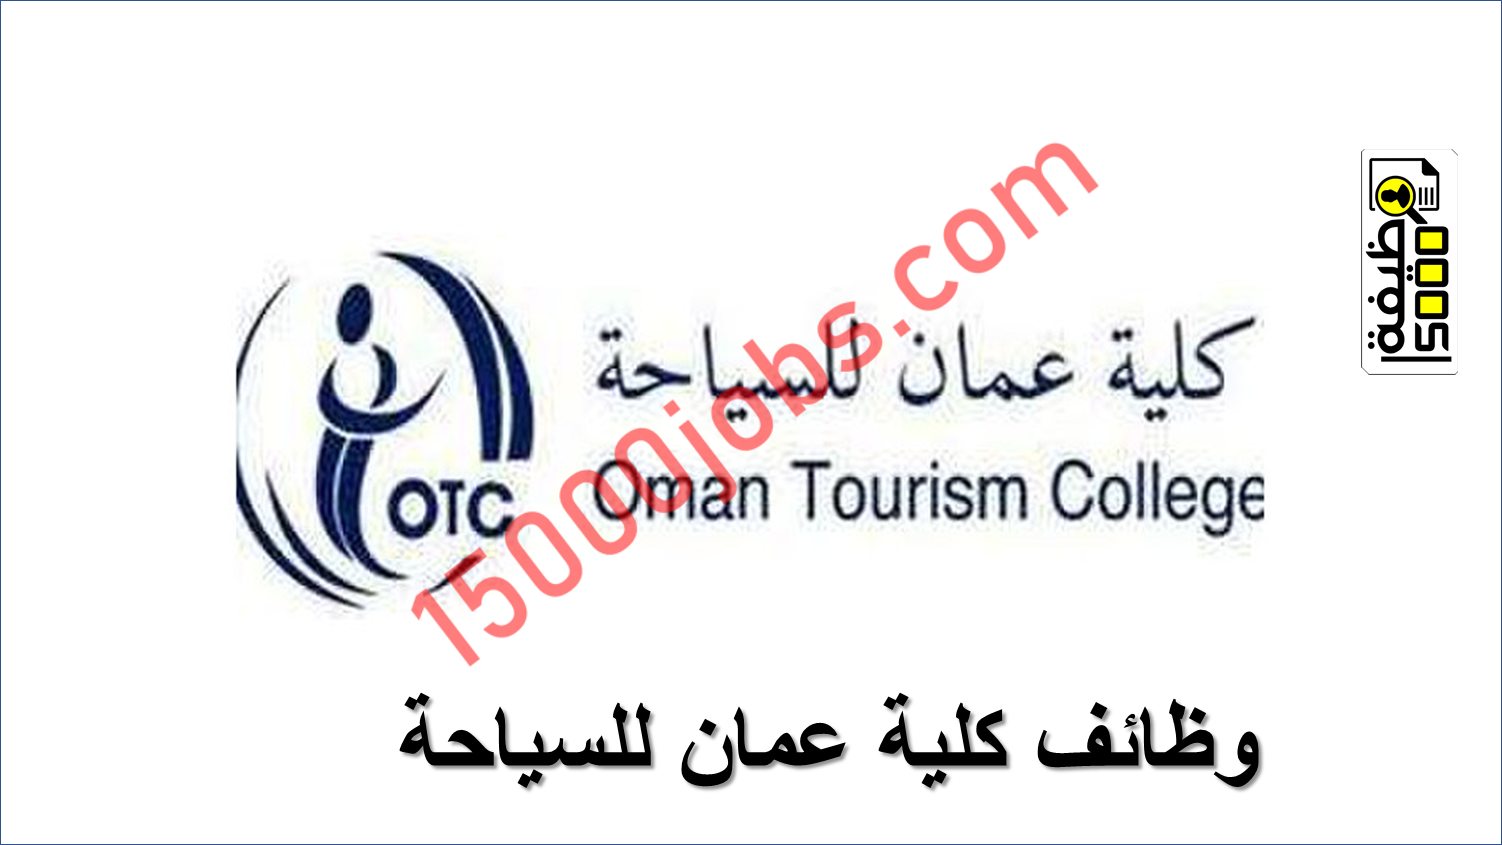 فرض وظيفية في كلية عمان للسياحة – للعمانيين فقط